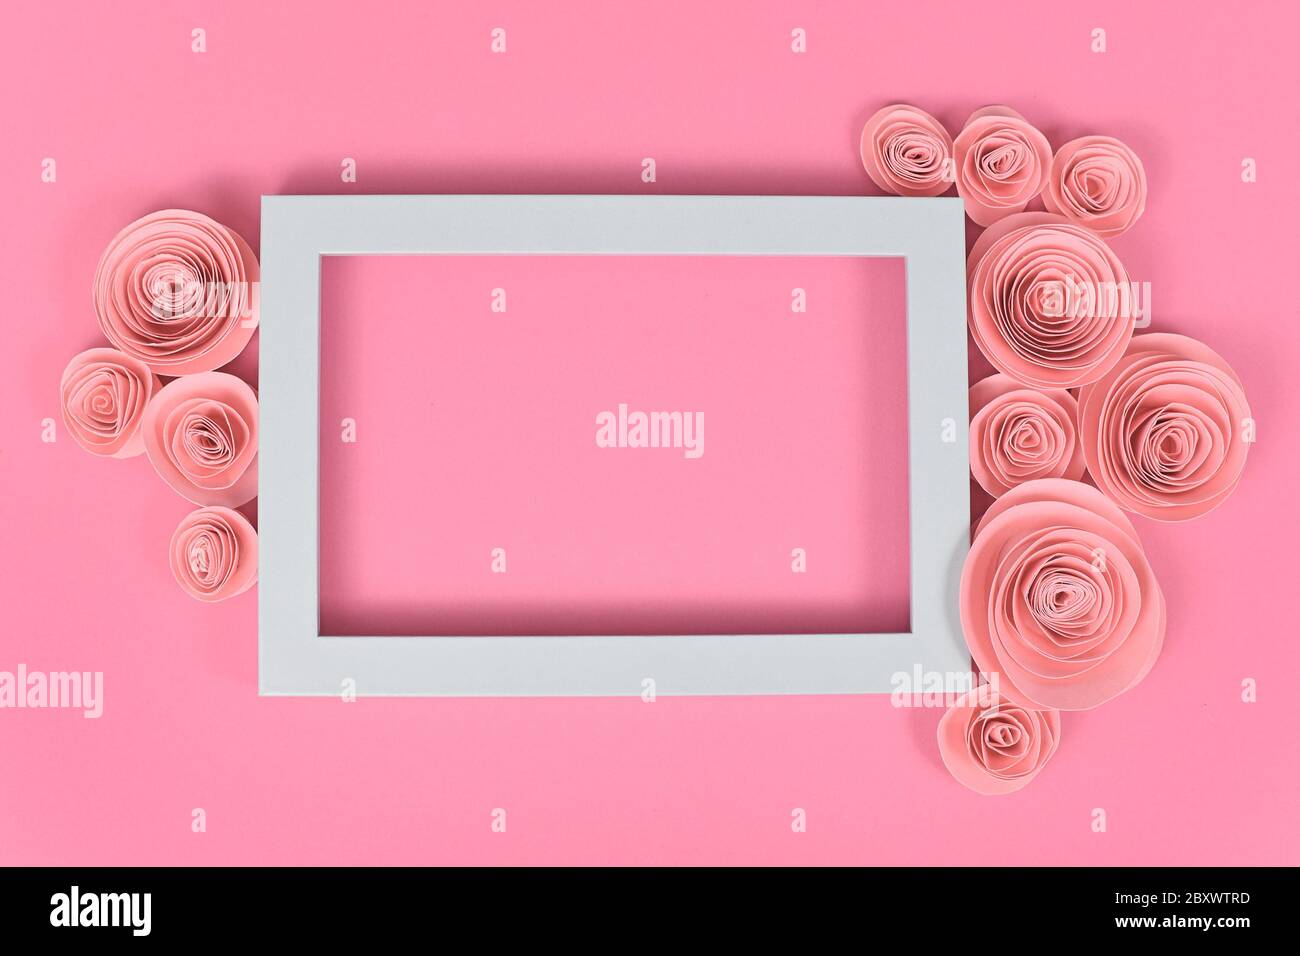 Fiore piatto con cornice vuota circondata da romantiche rose artigianali di carta su sfondo rosa pastello Foto Stock